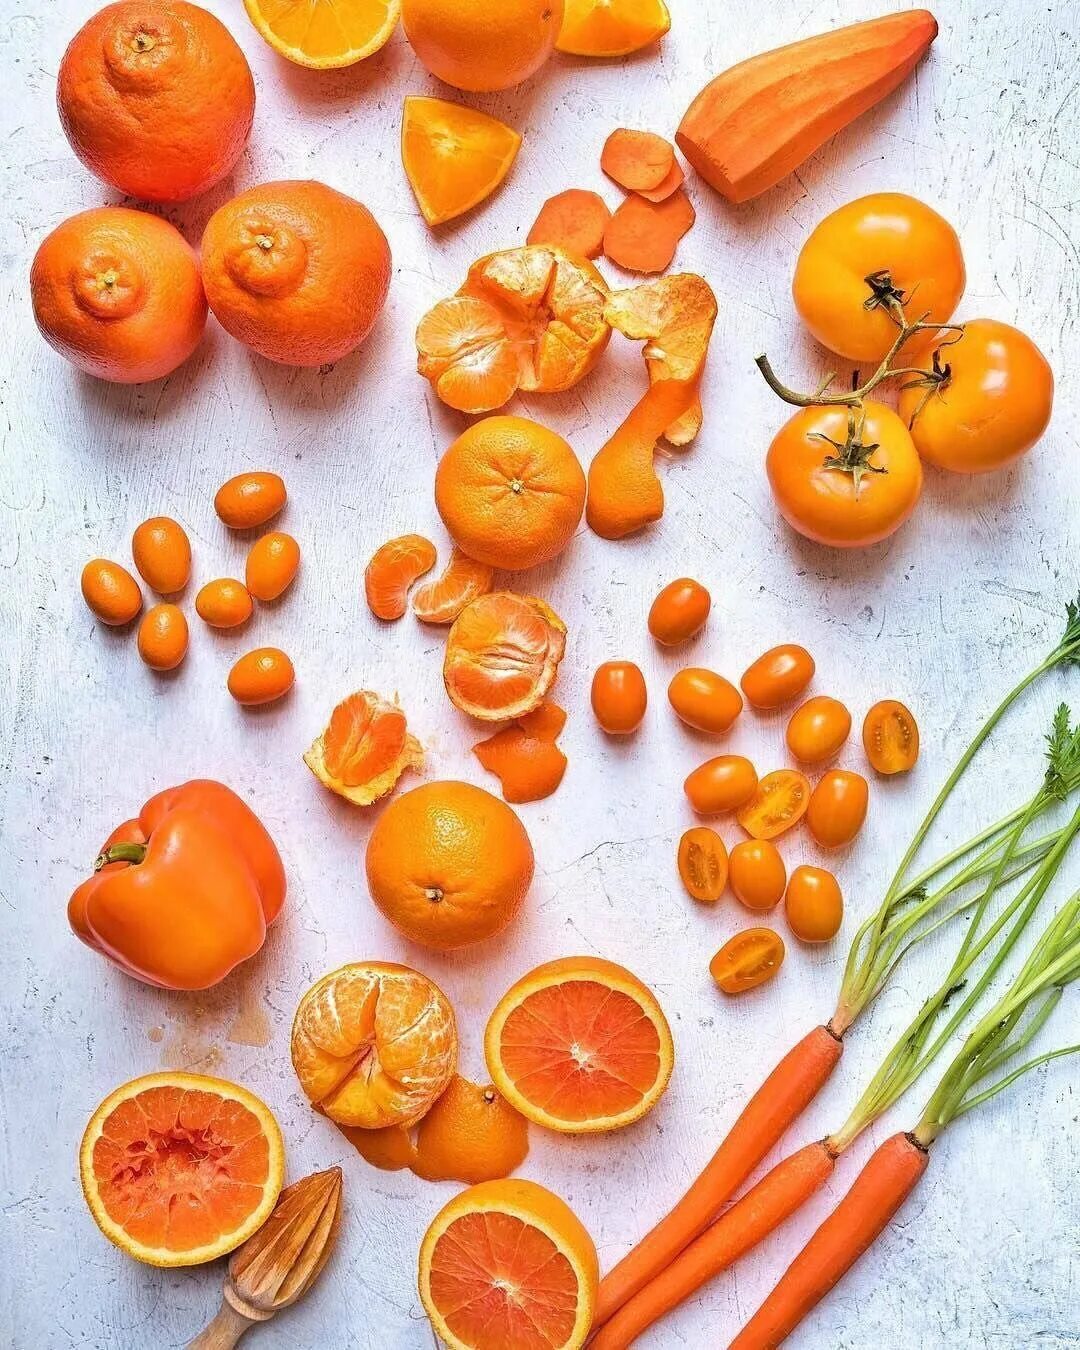 Orange vegetables. Кумкват оранжевый. Фрукты и овощи оранжевого цвета. Оранжевый экзотический фрукт. Оранжевые фрукты и овощи и ягоды.